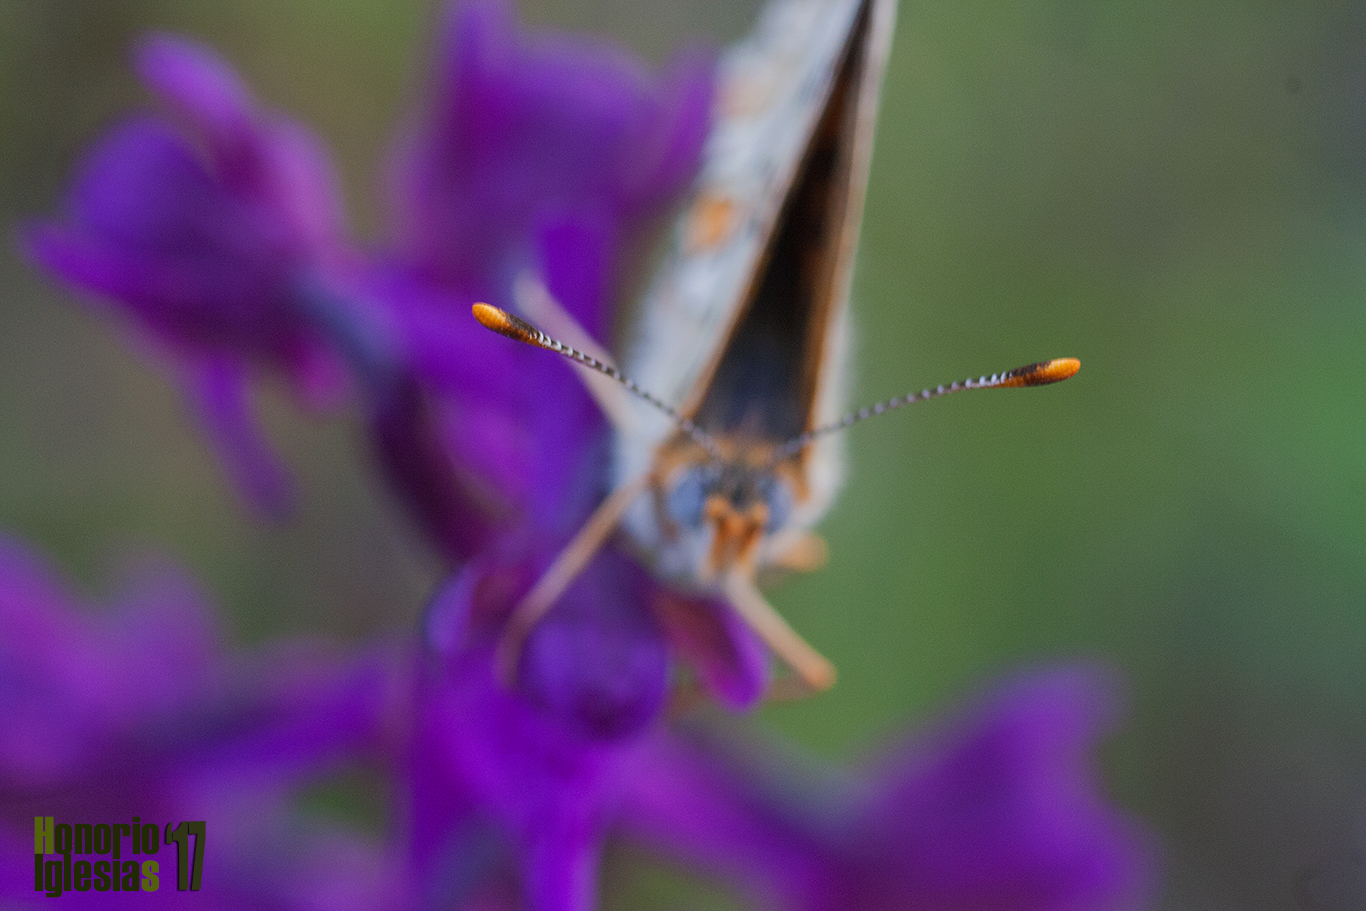 Detalle de las antenas en forma de maza de un ejemplar de doncella mayor (Melitaea phoebe). Las antenas son las estructuras  donde reside gran parte del olfato de las mariposas.